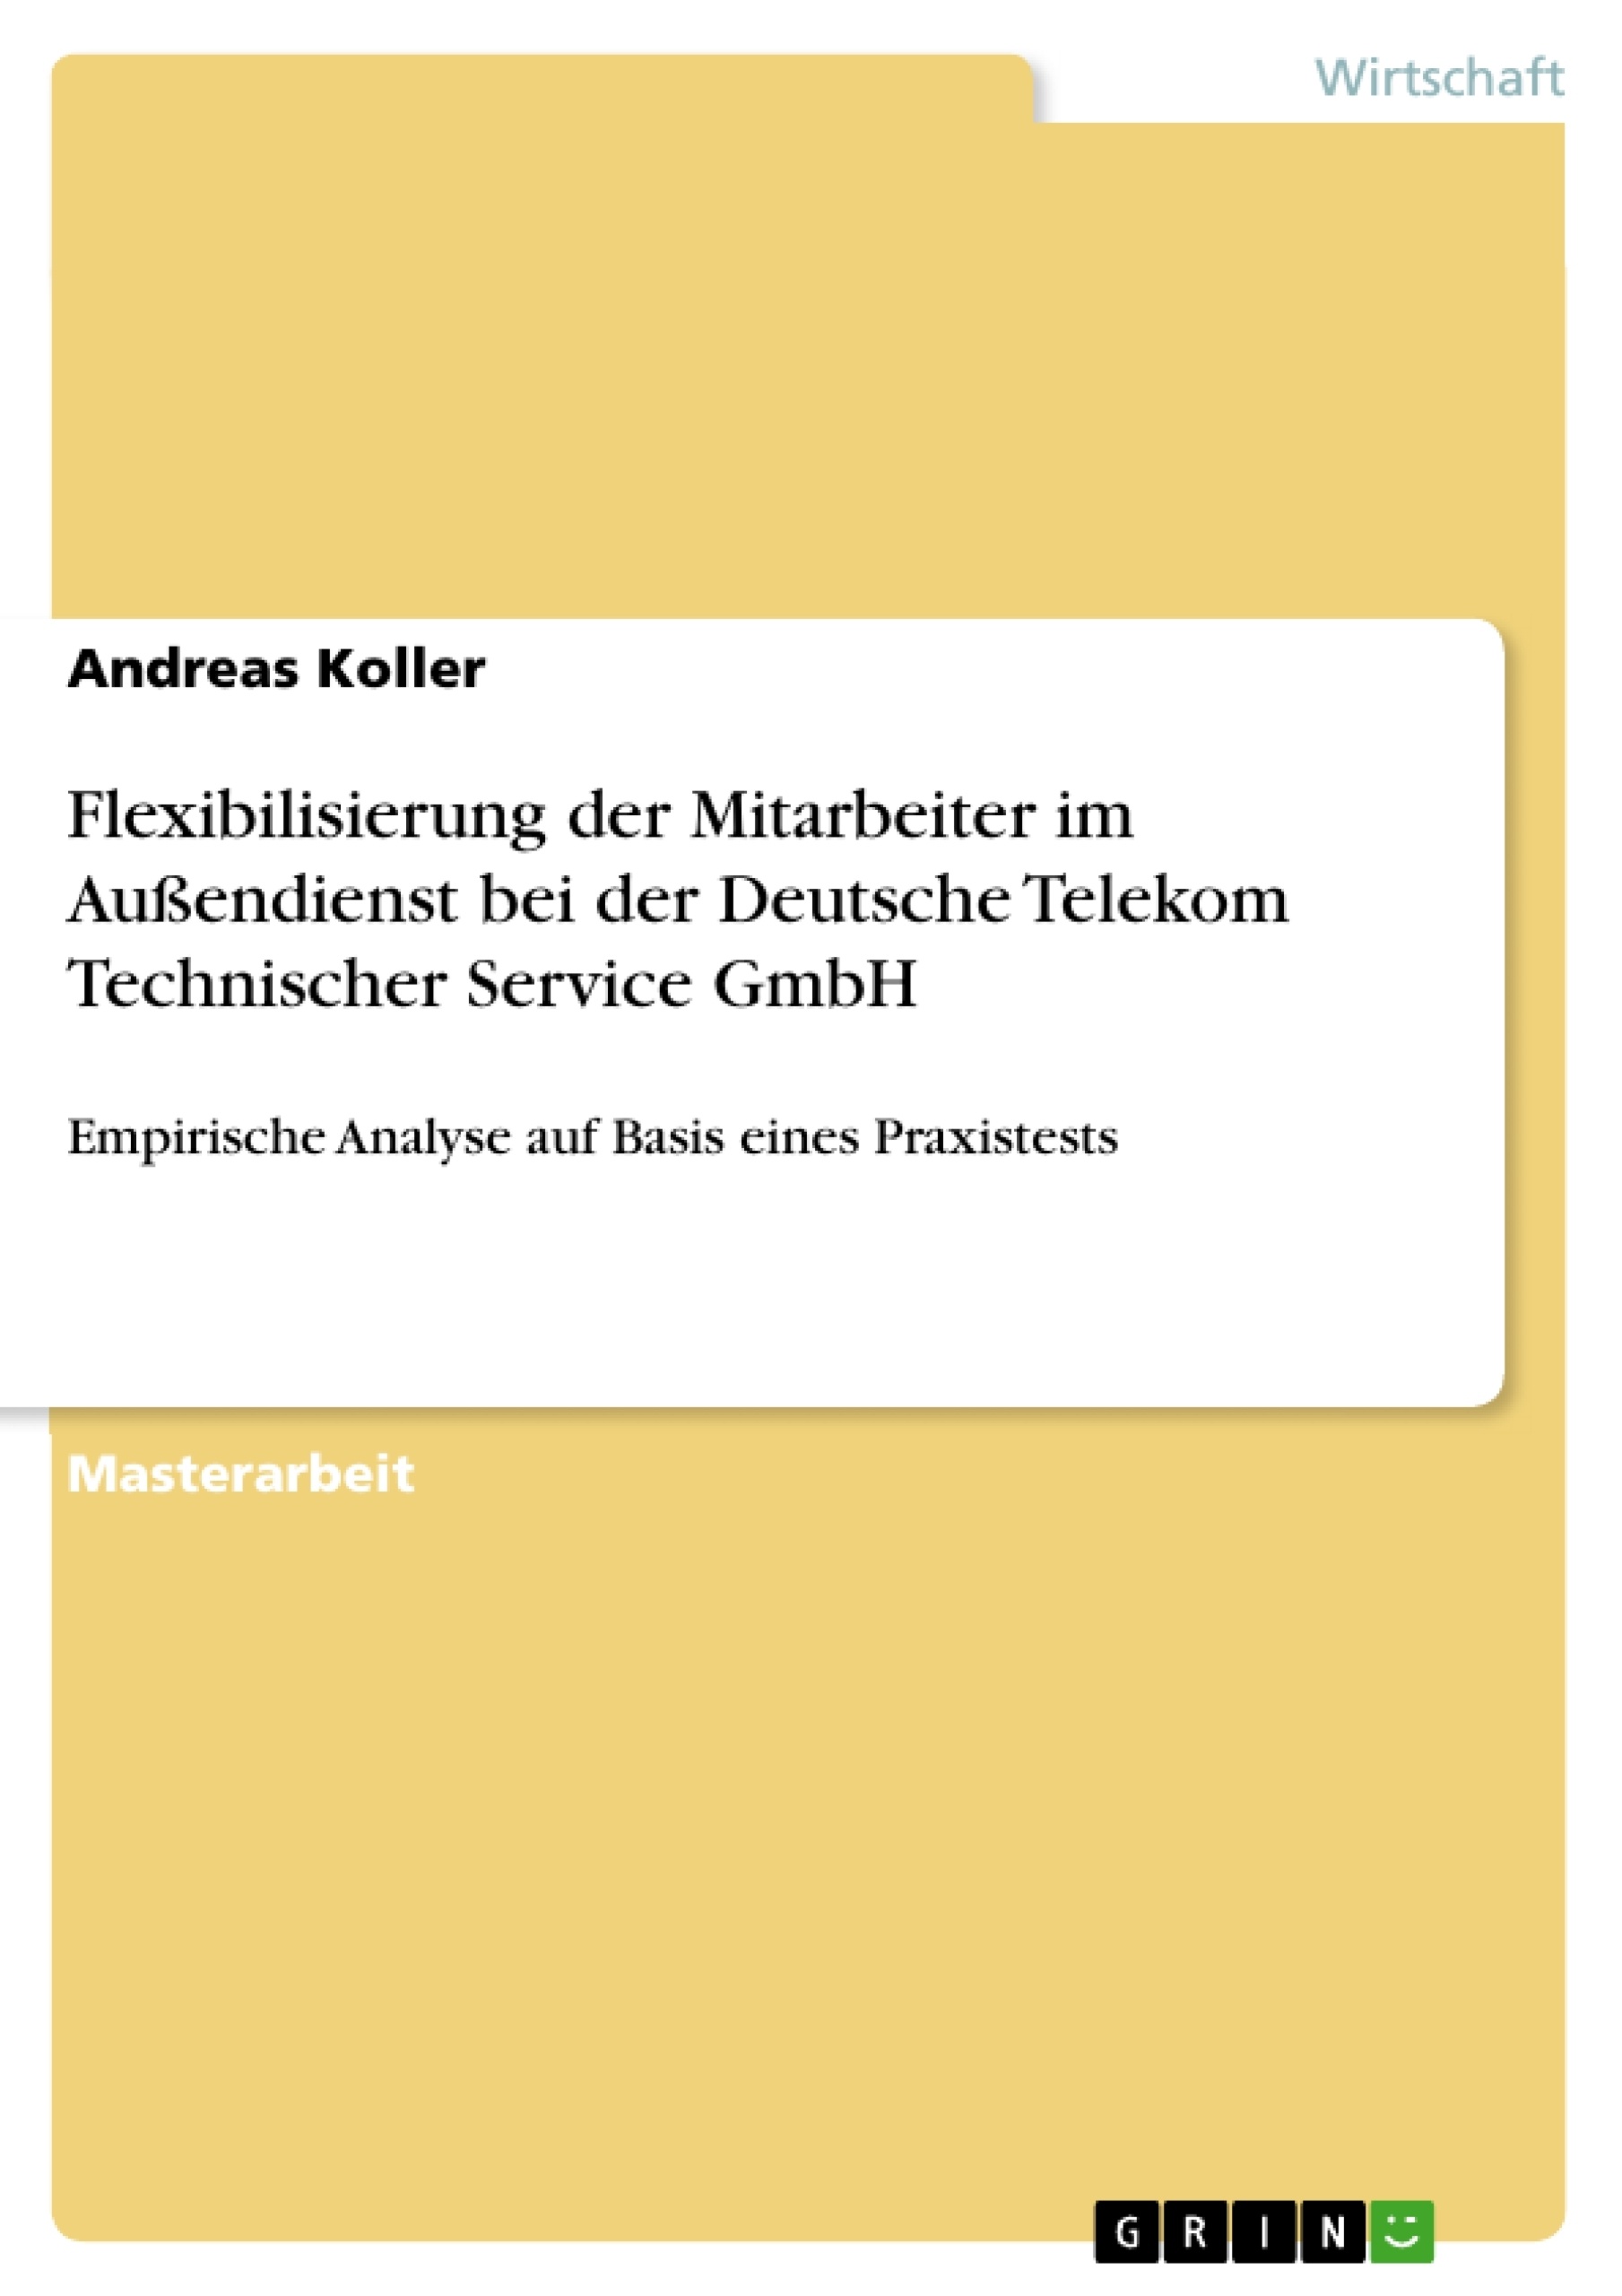 Title: Flexibilisierung der Mitarbeiter im Außendienst bei der Deutsche Telekom Technischer Service GmbH